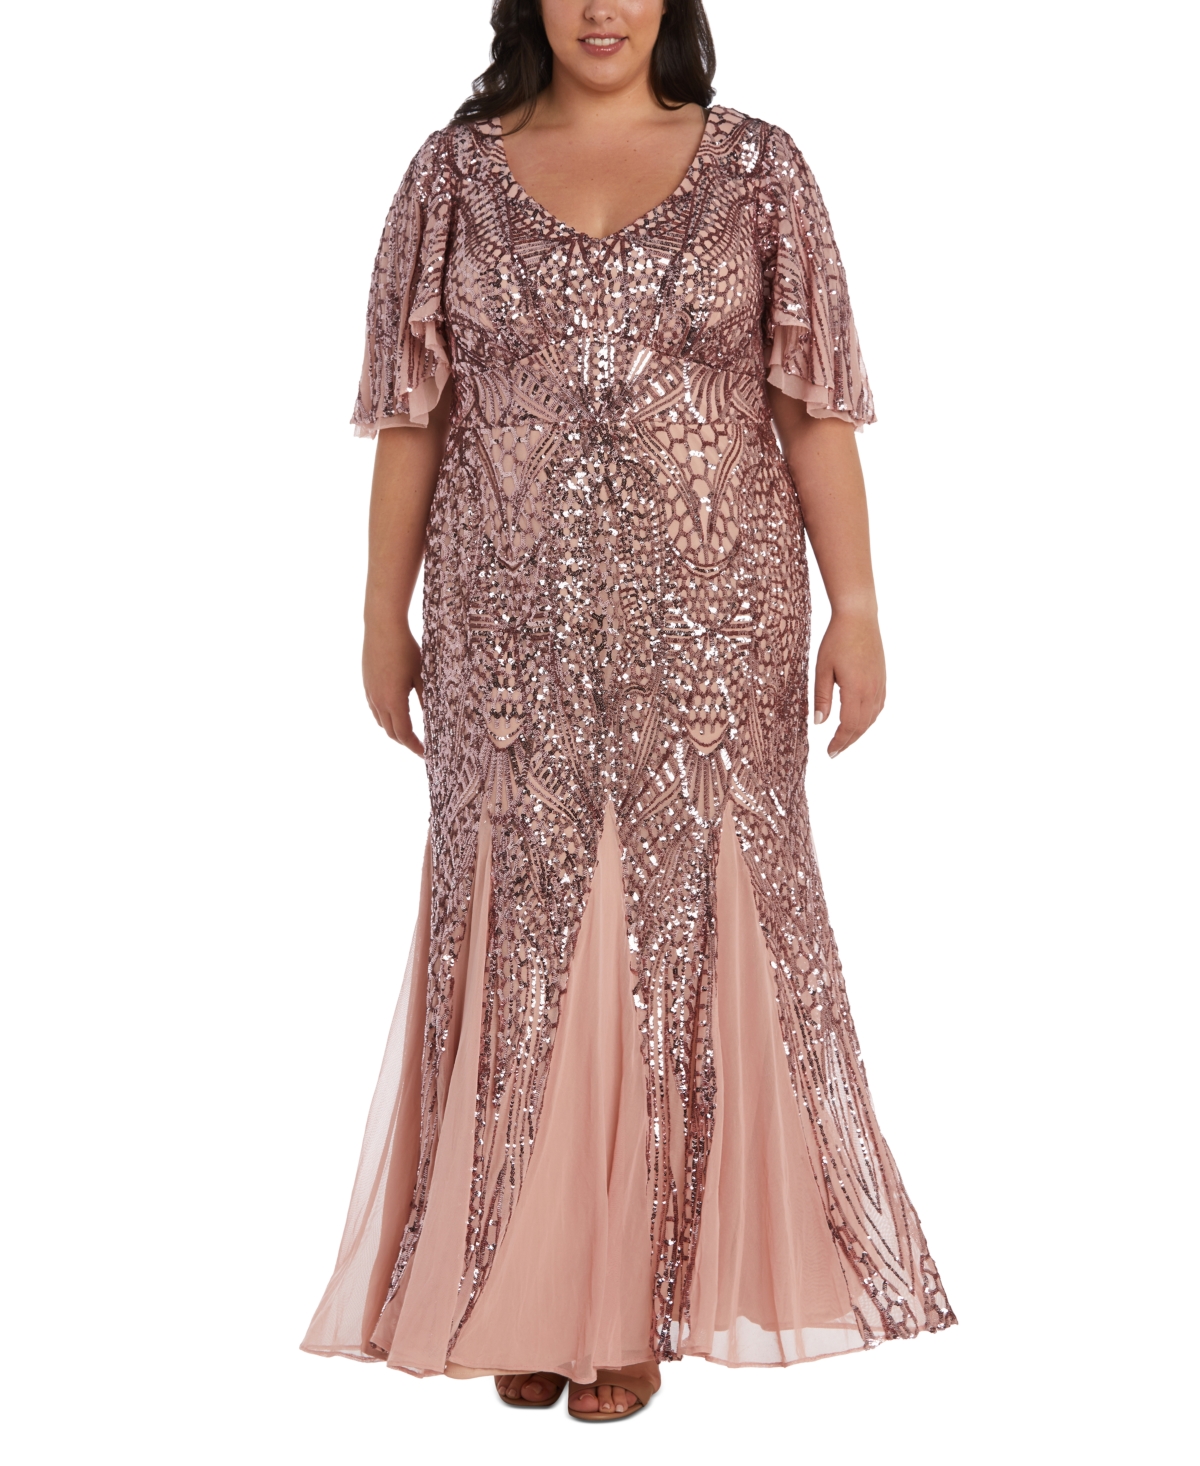 1920s Evening Dresses & Formal Gowns Nightway Plus Size Sequin Flutter-Sleeve Godet Gown - Mauve $209.00 AT vintagedancer.com